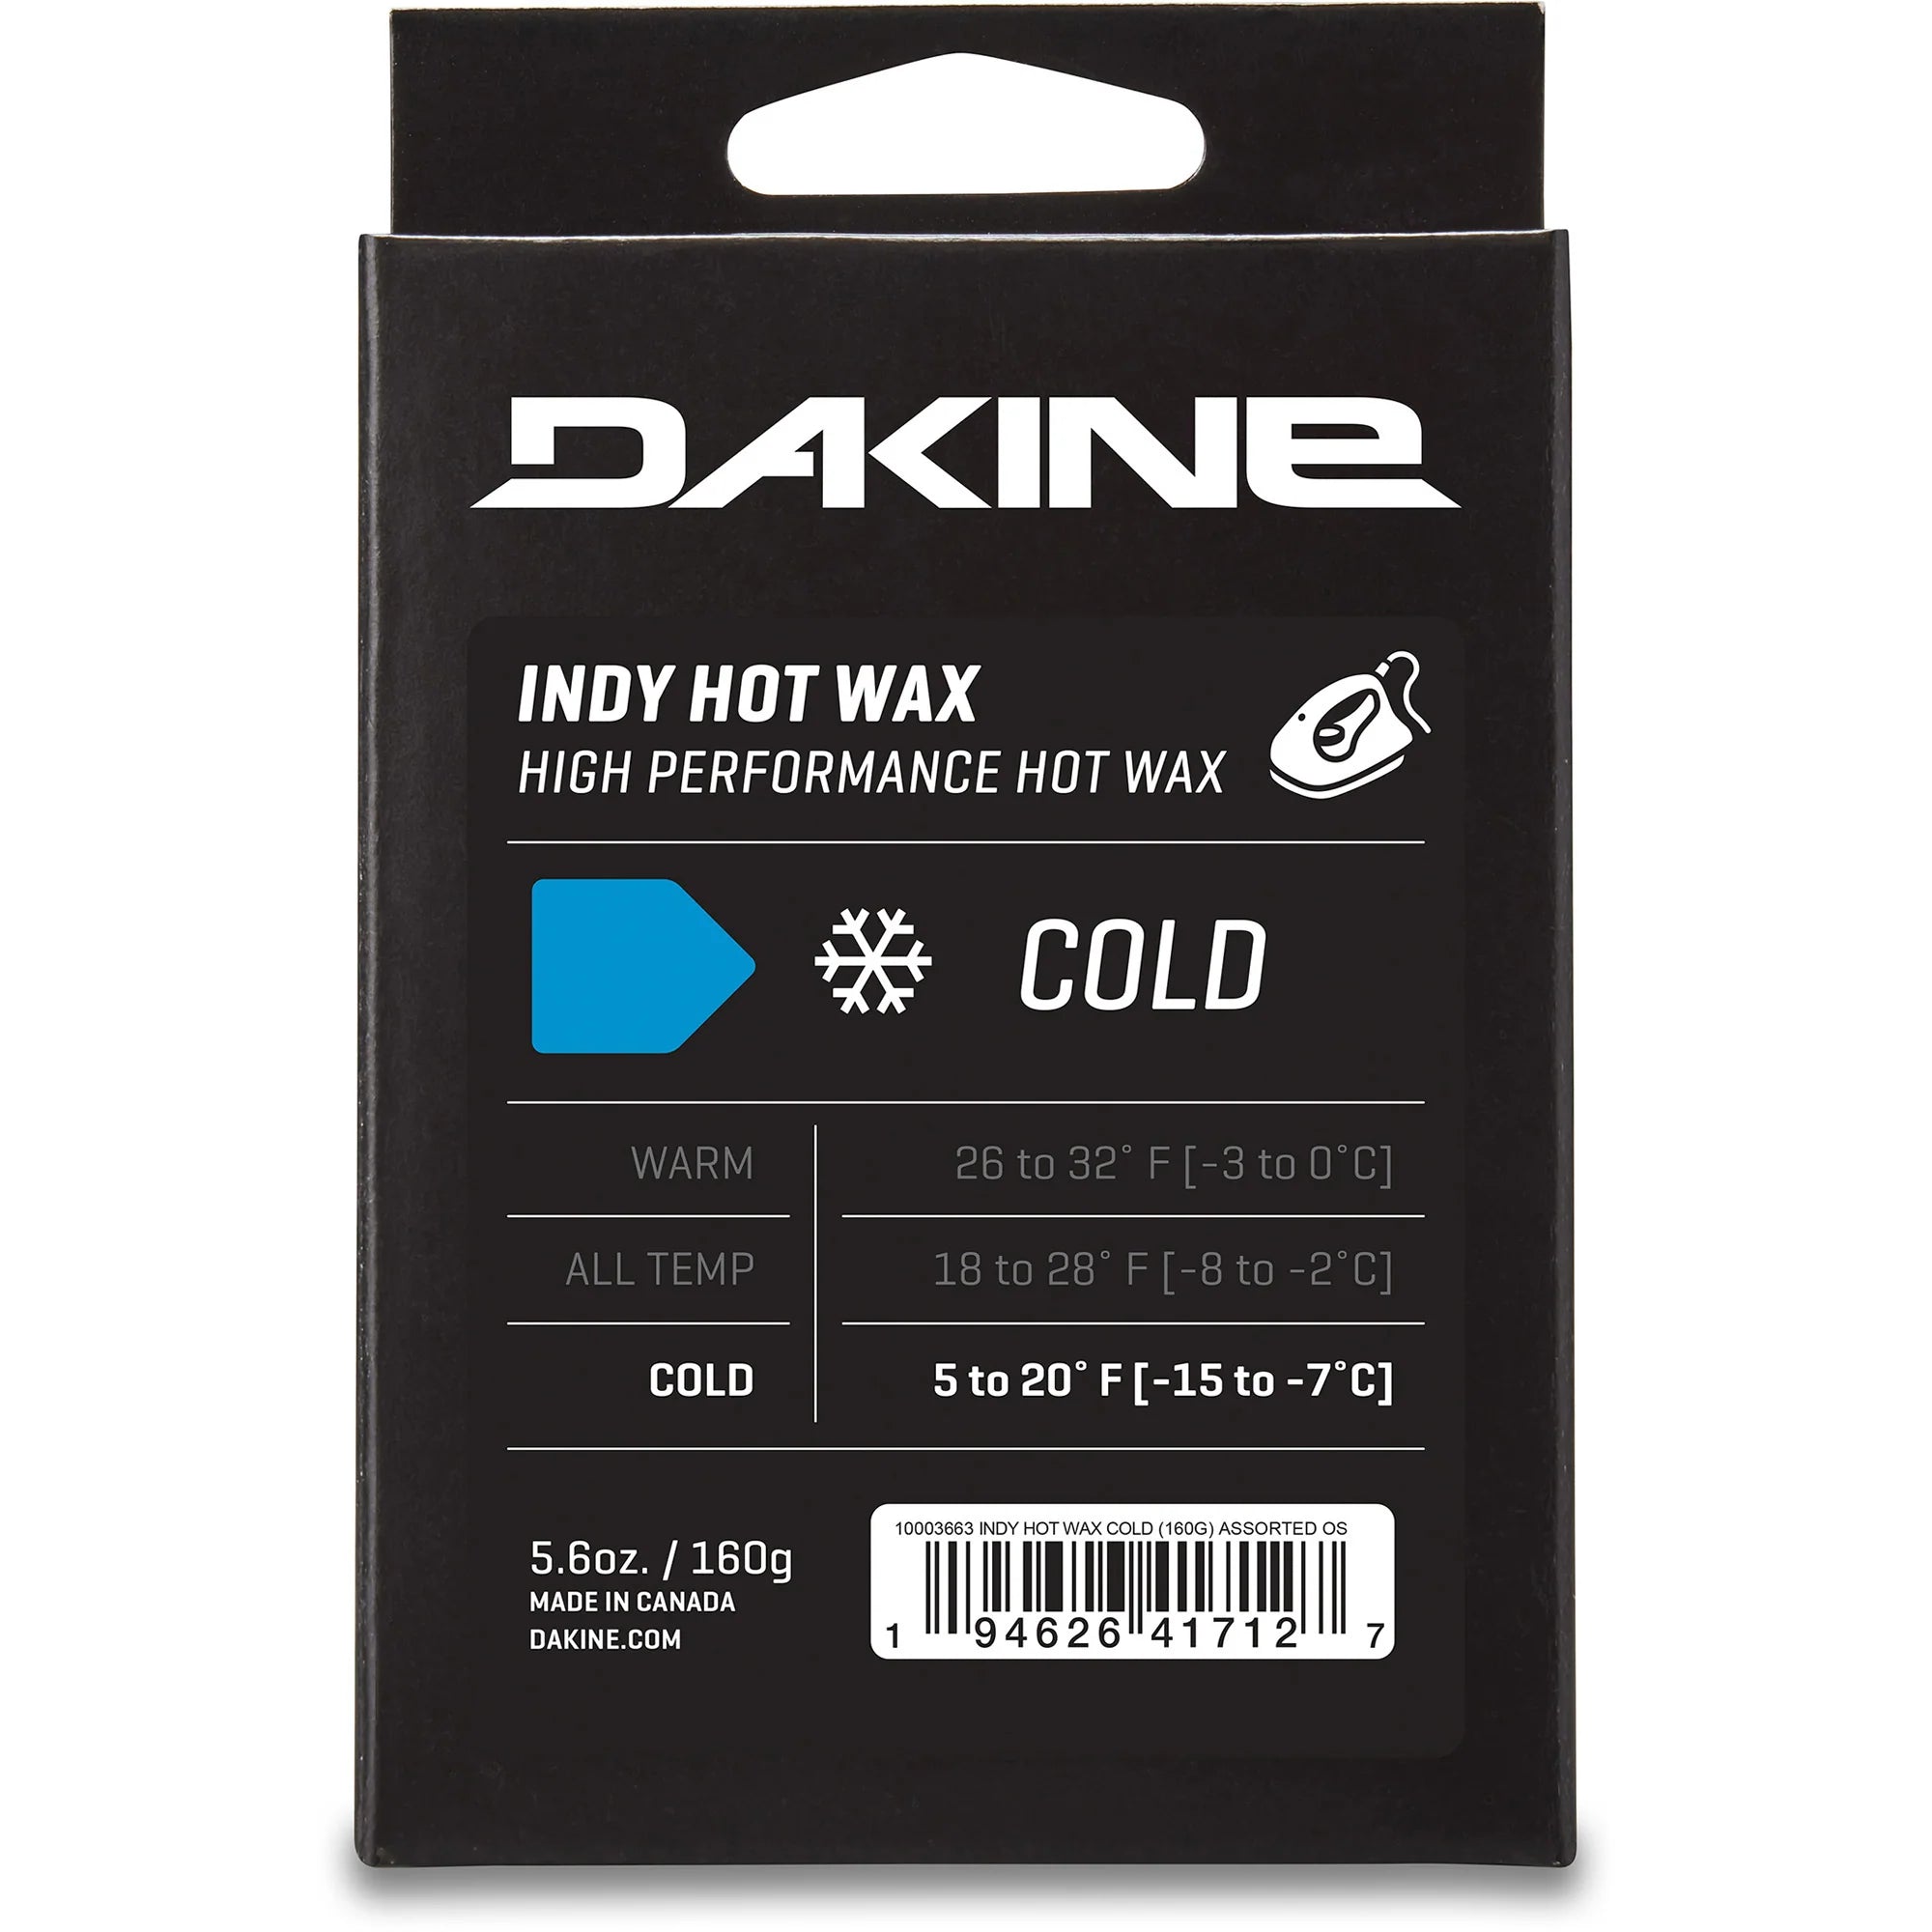 DAKINE Indy Hot Wax Cold Temp Snowboard Wax Dakine 